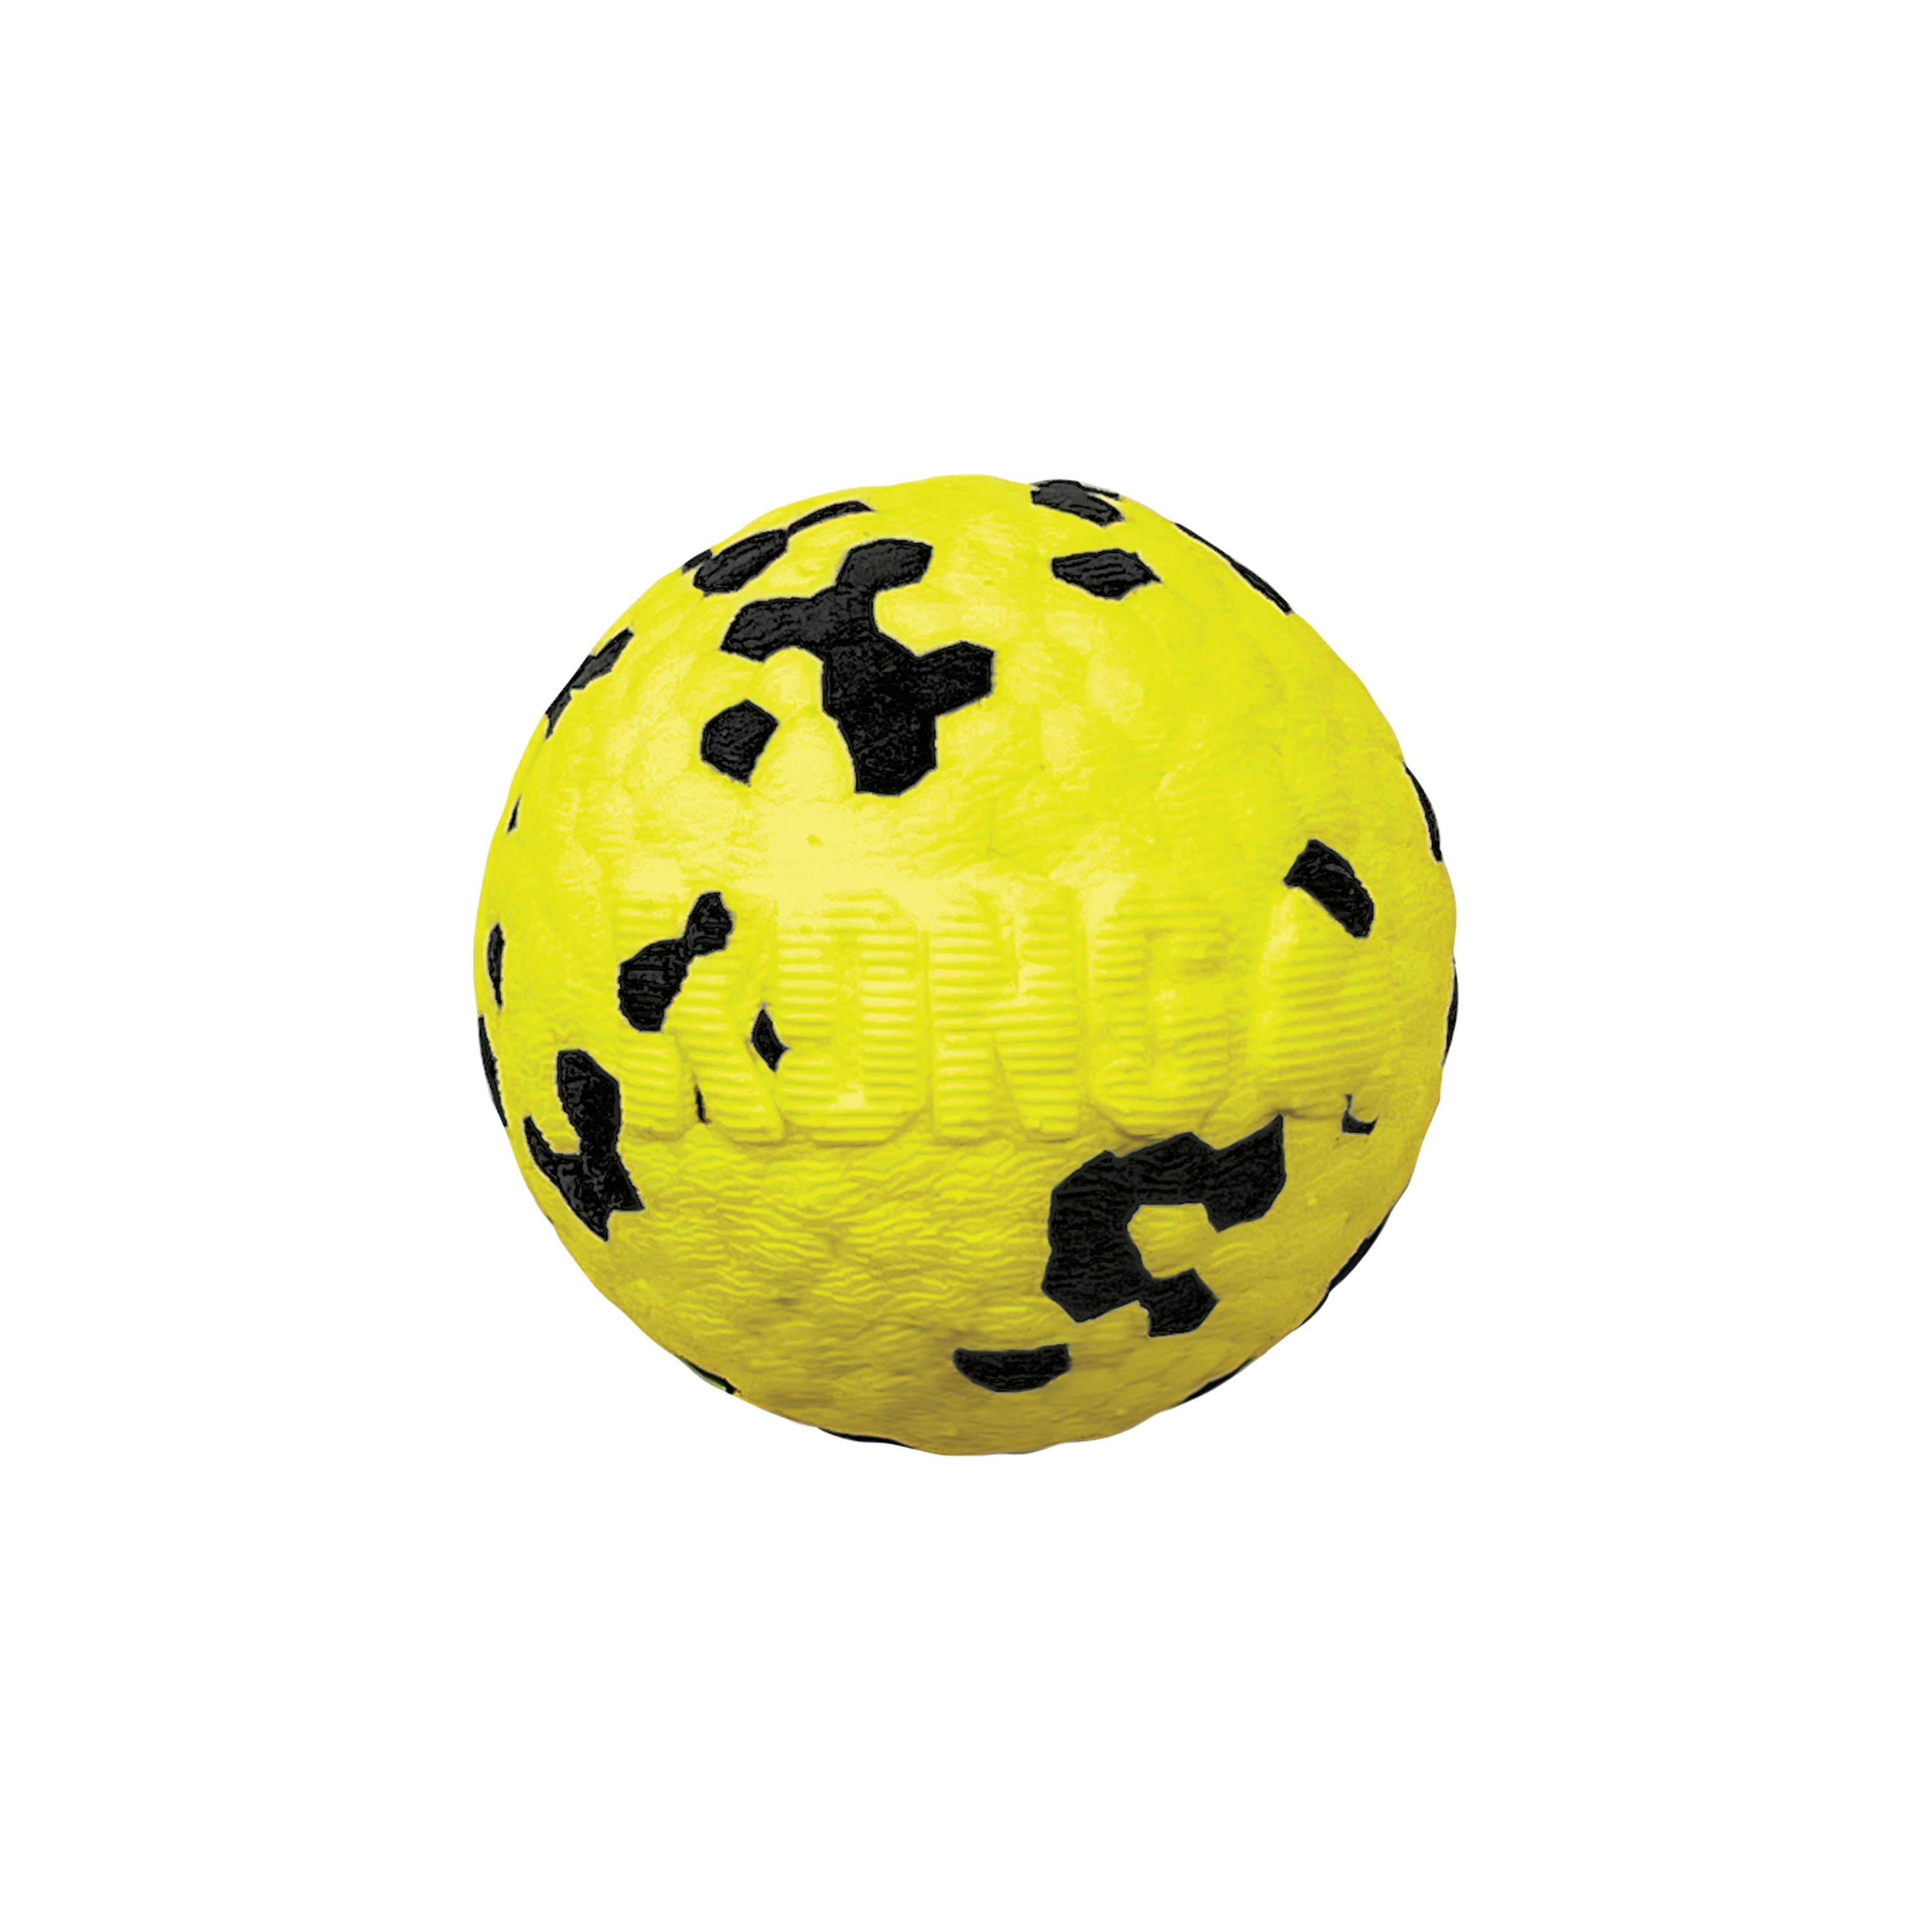 Reflex Ball offpack Produktbild